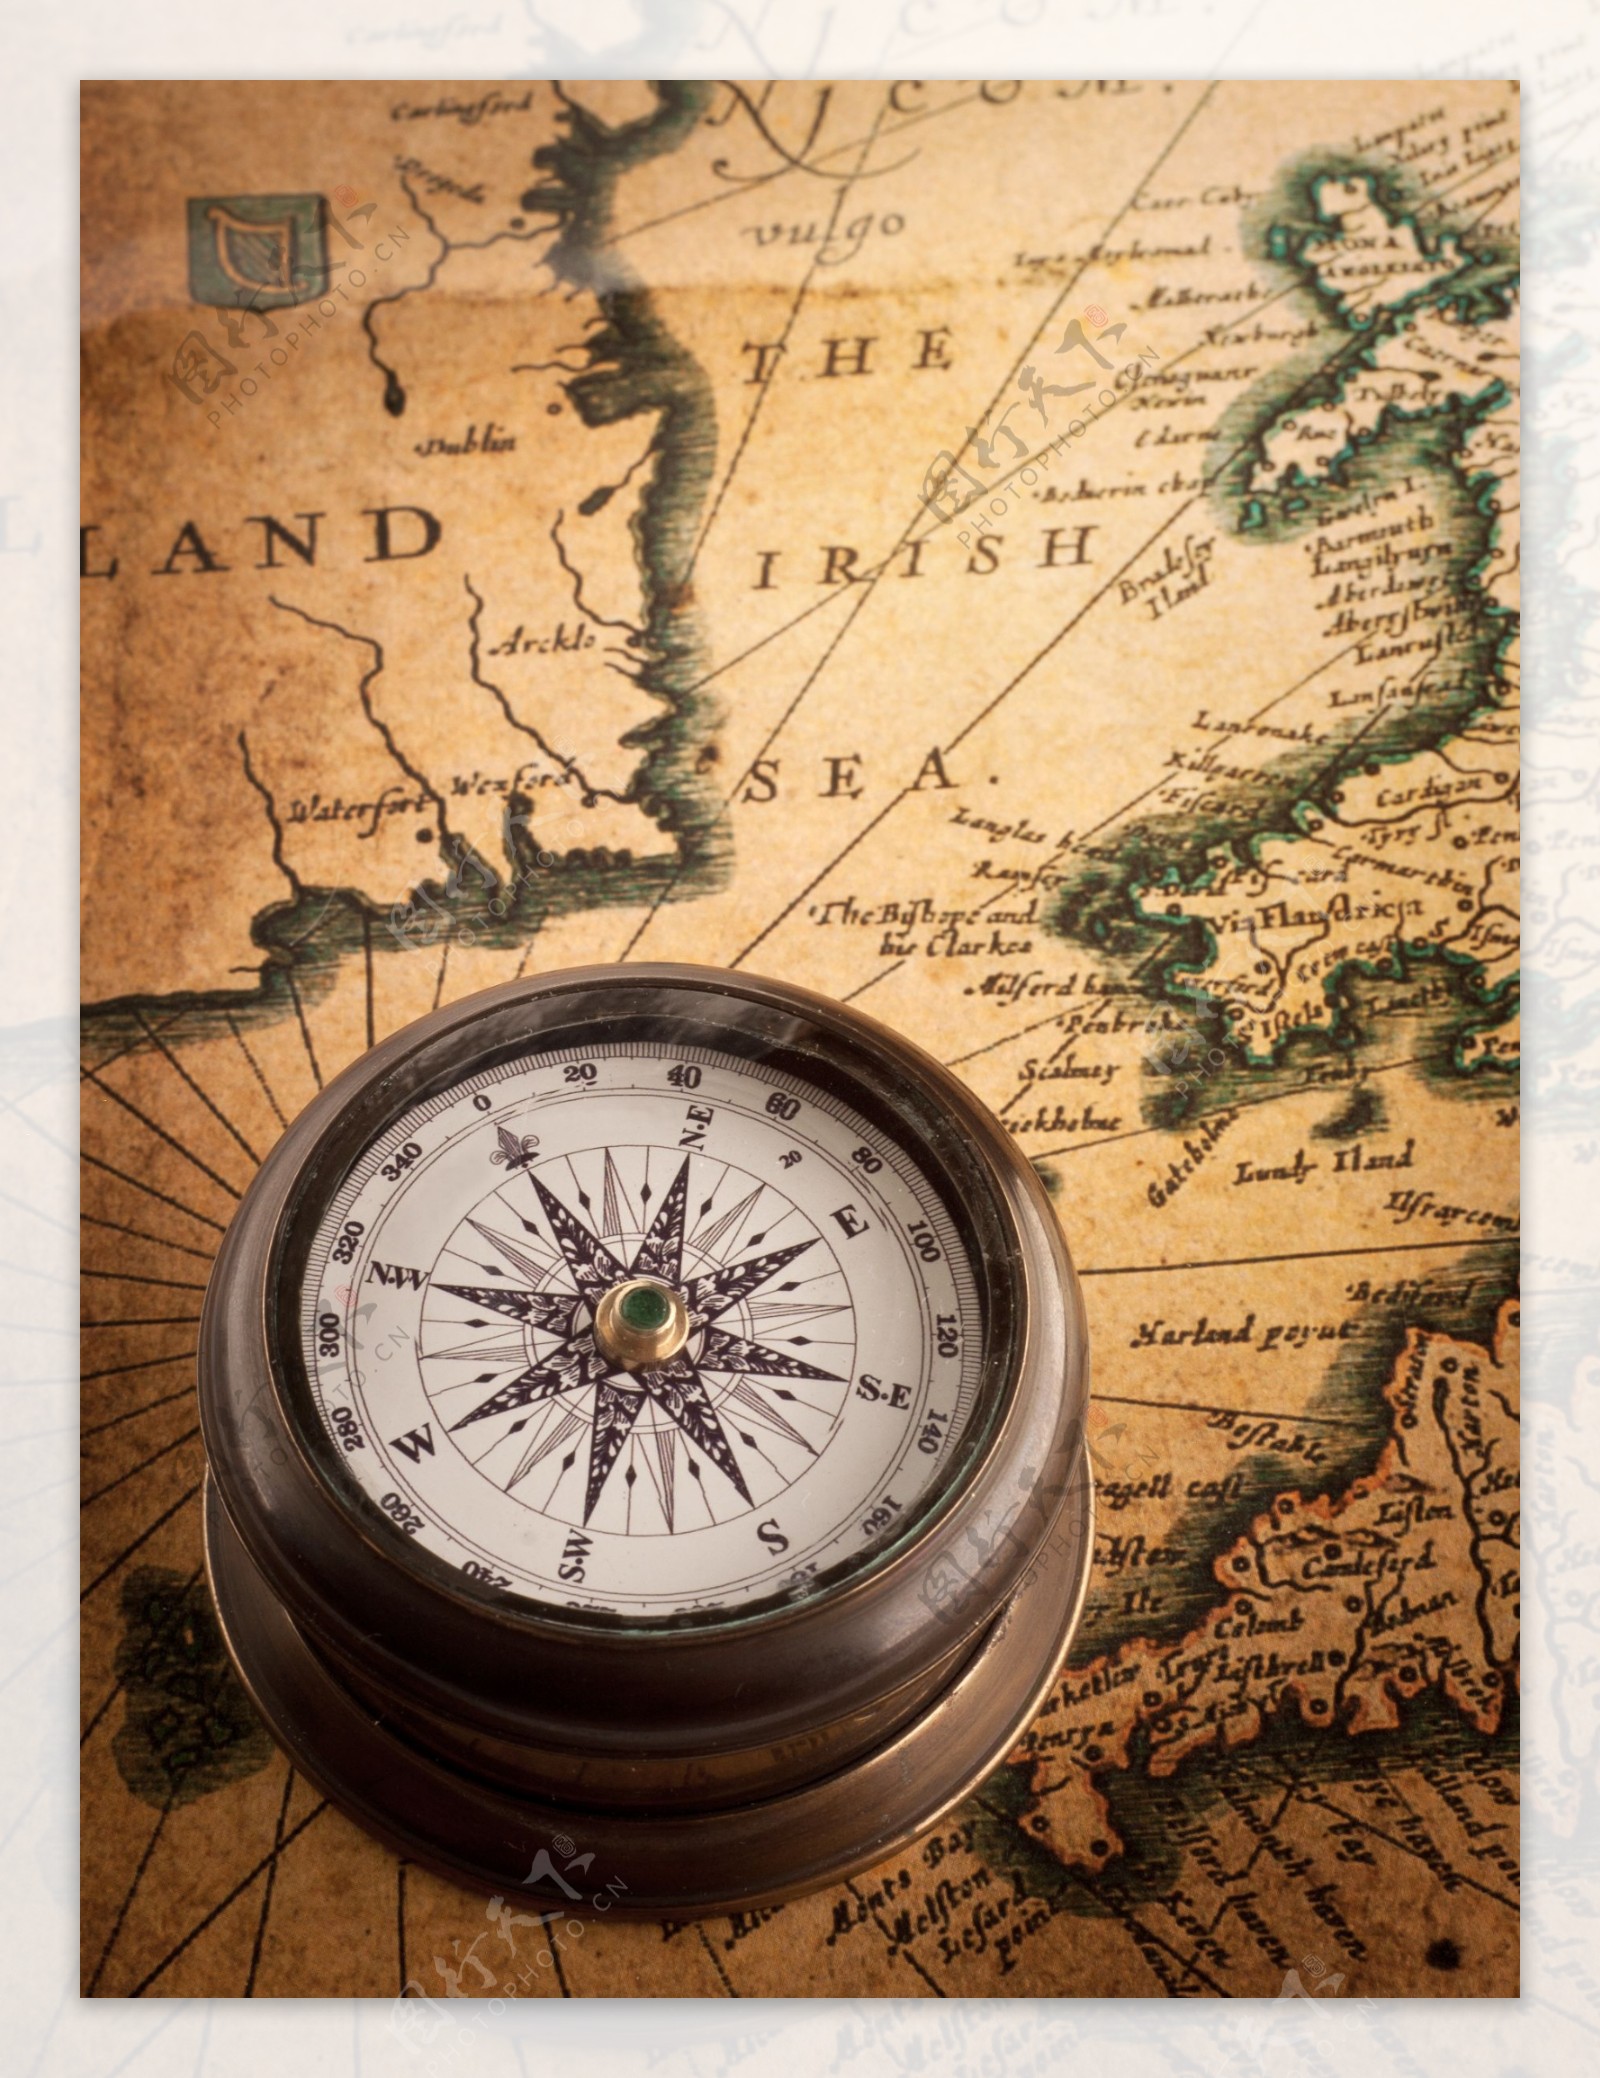 航海地图与指南针